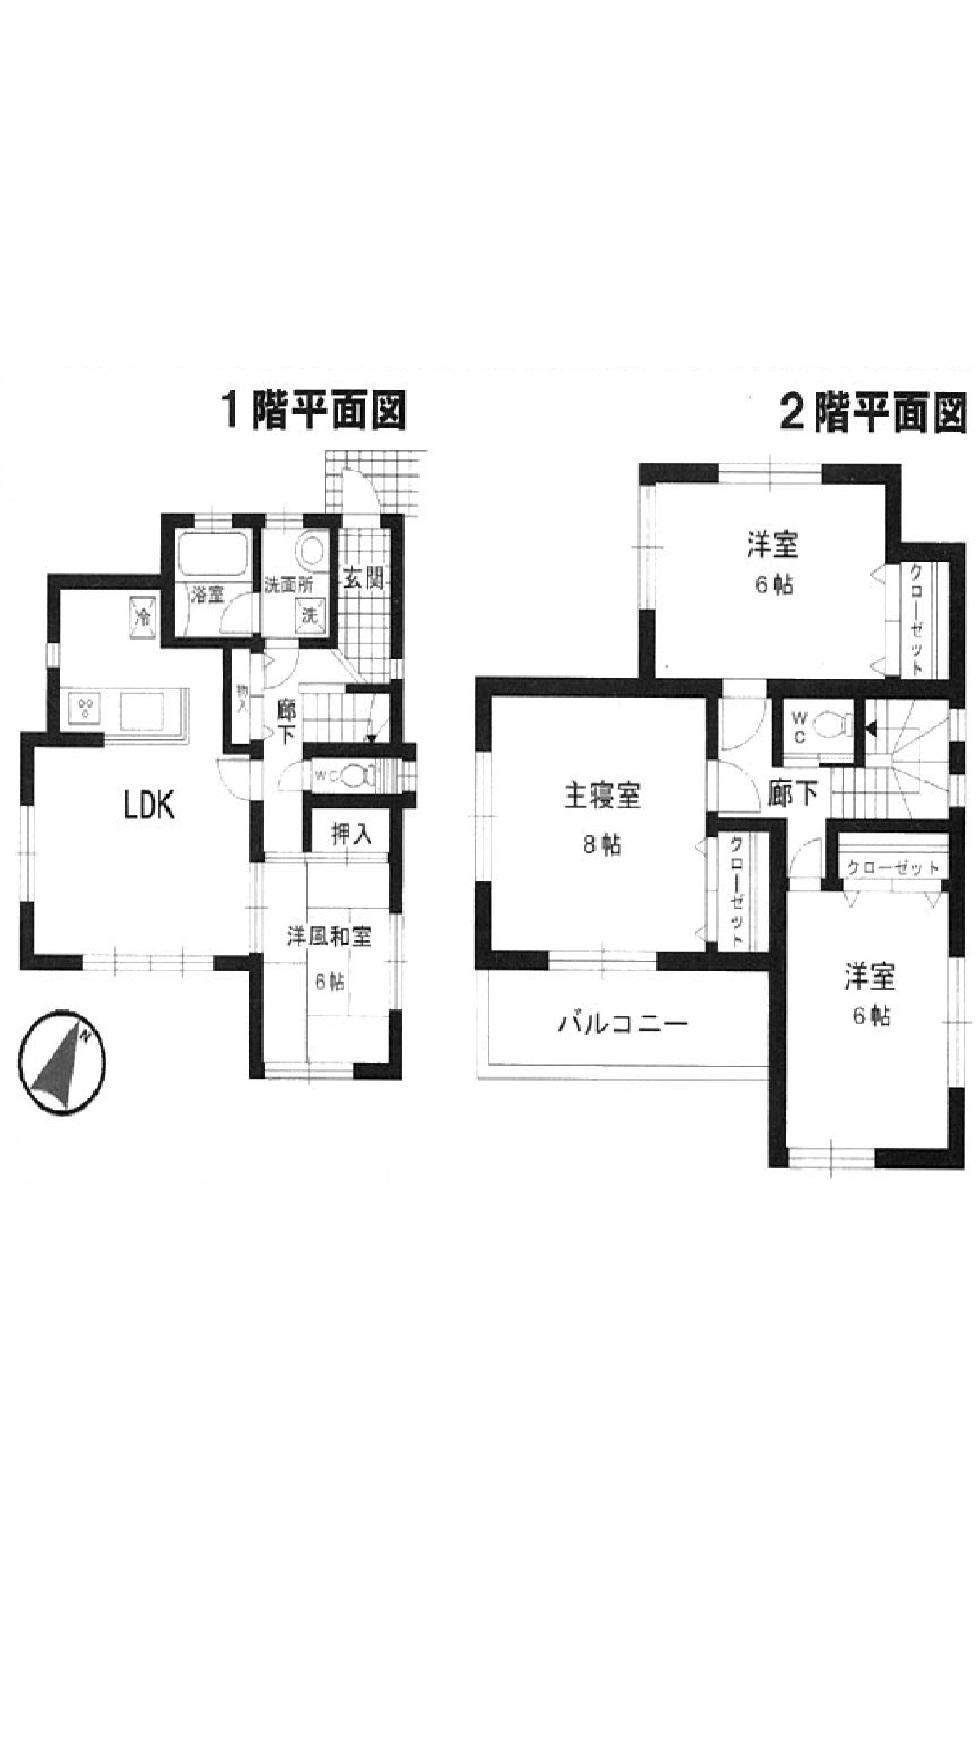 Floor plan. 28 million yen, 4LDK, Land area 140.4 sq m , Building area 100.24 sq m